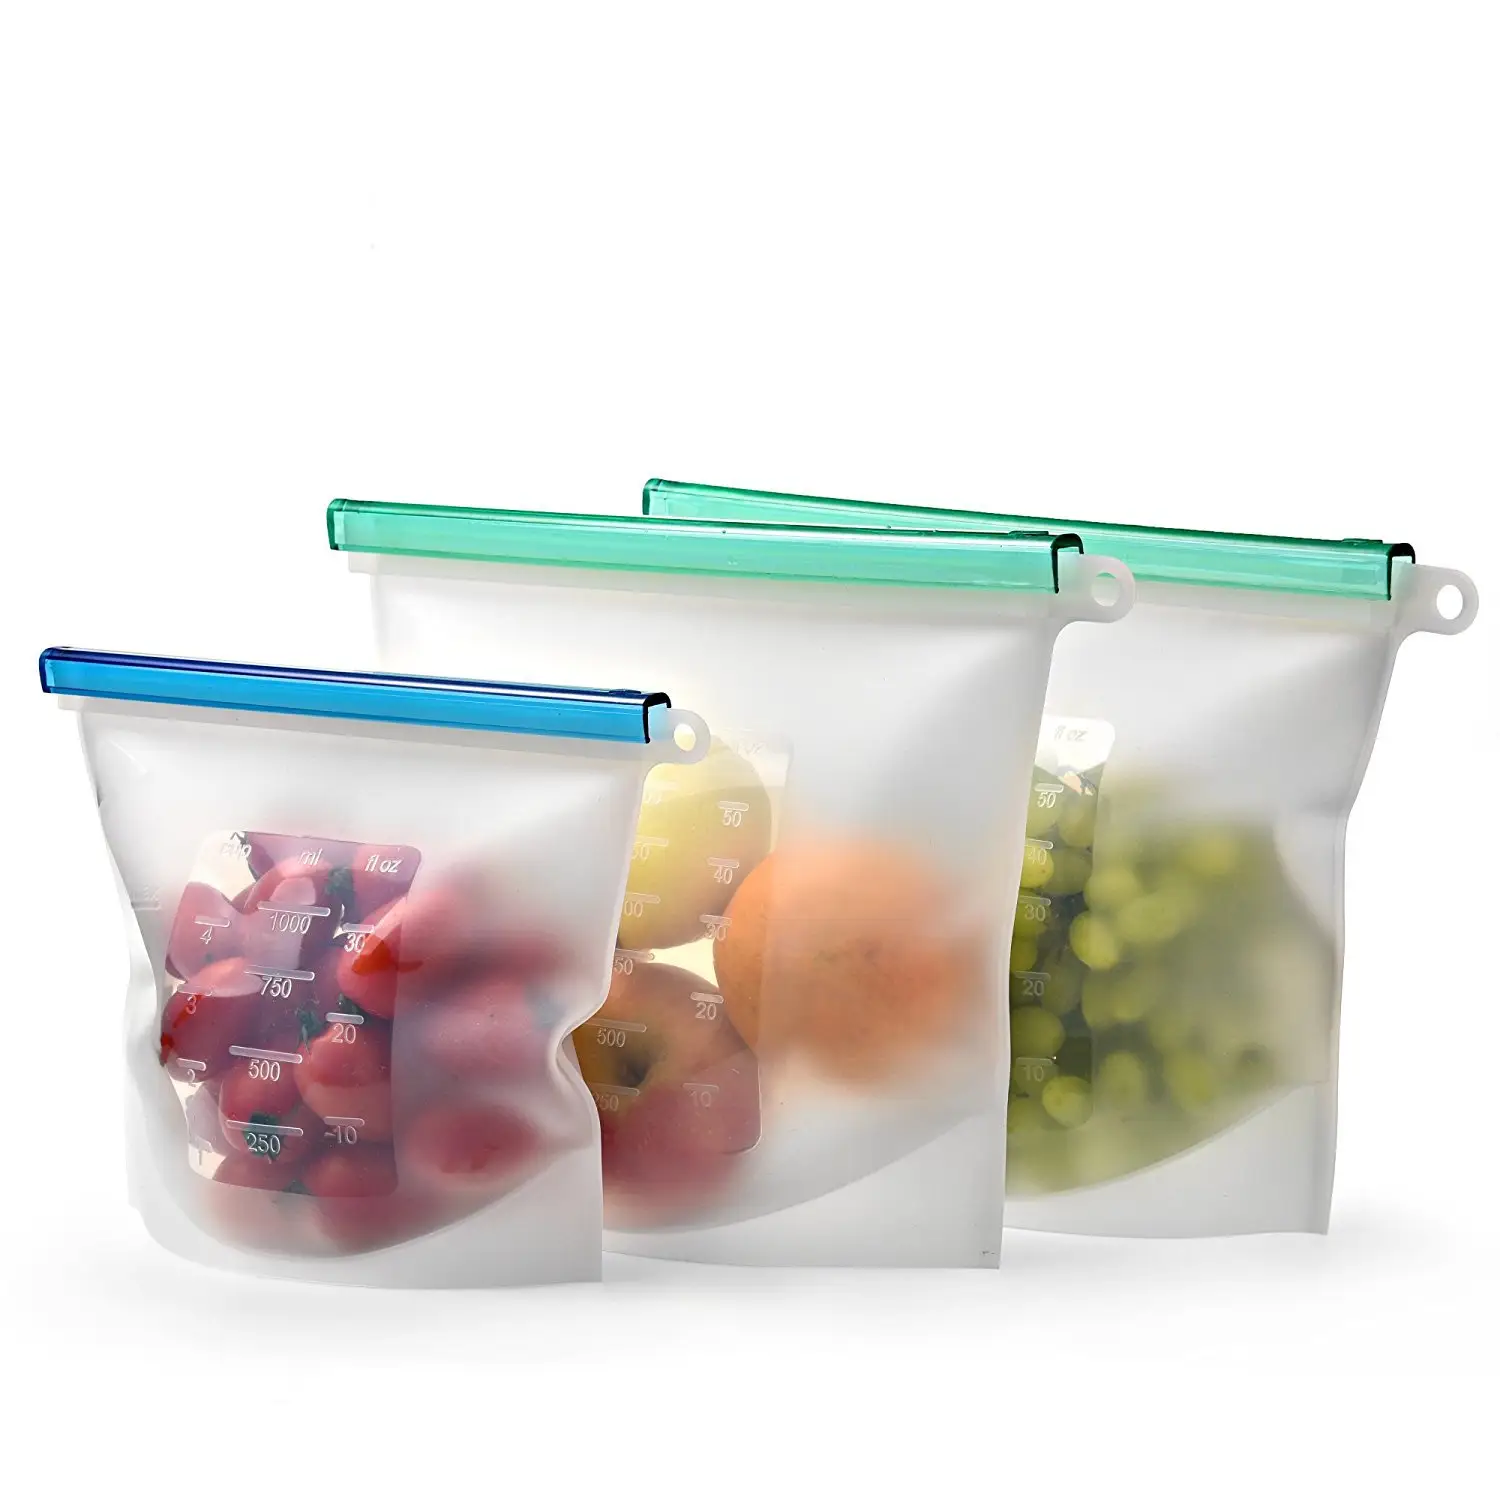 Wieder verwendbare BPA-freie Silikon-Lebensmittel-Vakuum-Aufbewahrungs-Gefrier behälter Silikon-Aufbewahrung beutel für Lebensmittel